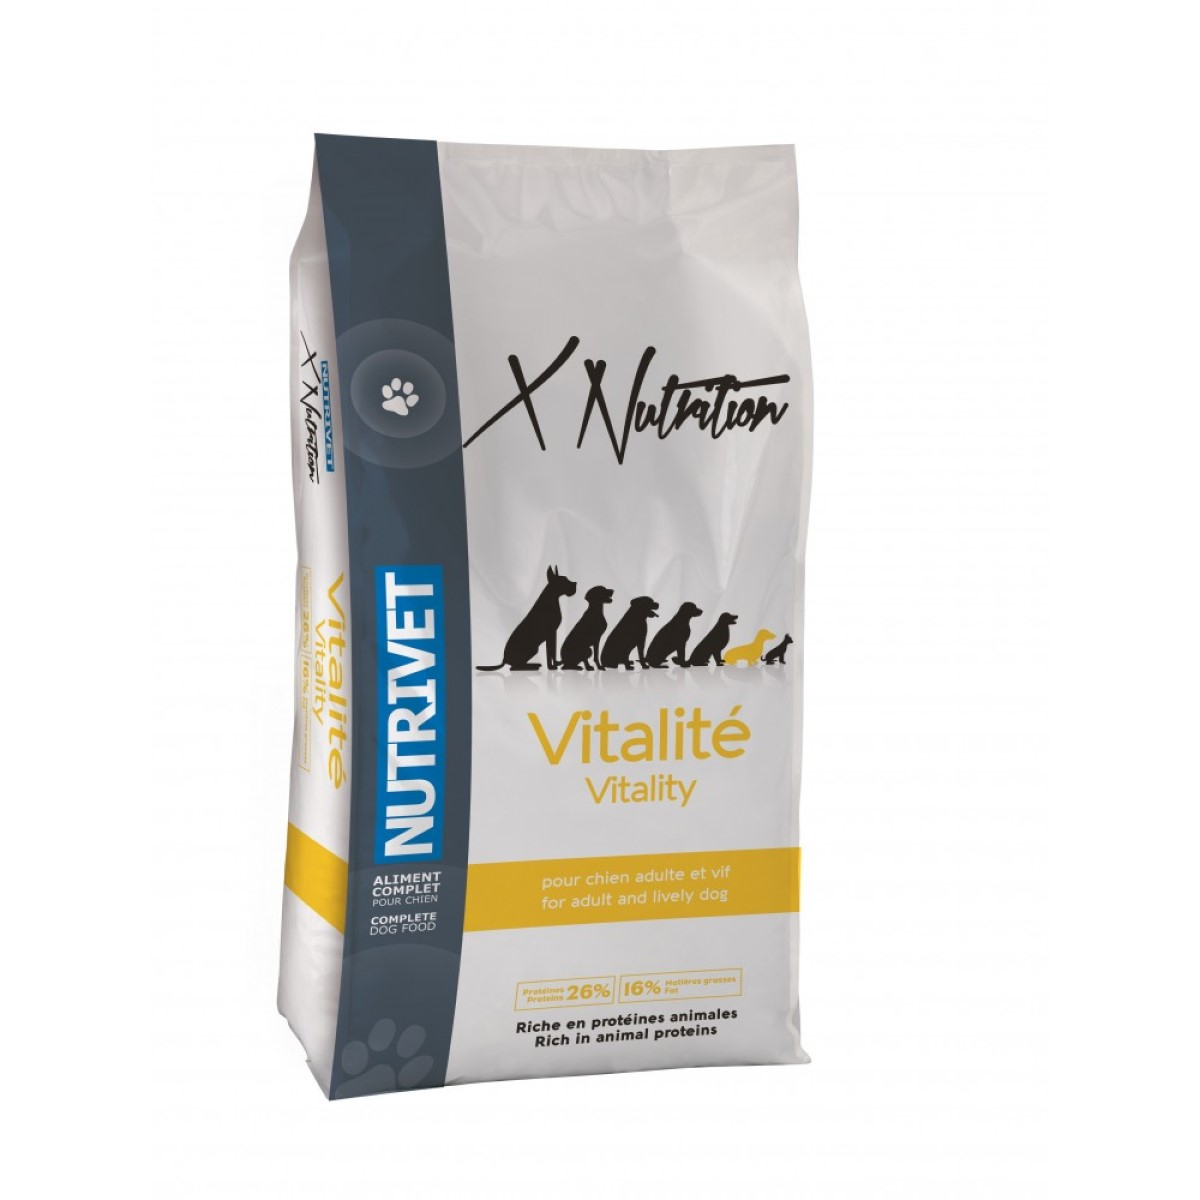 NUTRIVET Xnutrition vitality 26/16 für Hunde